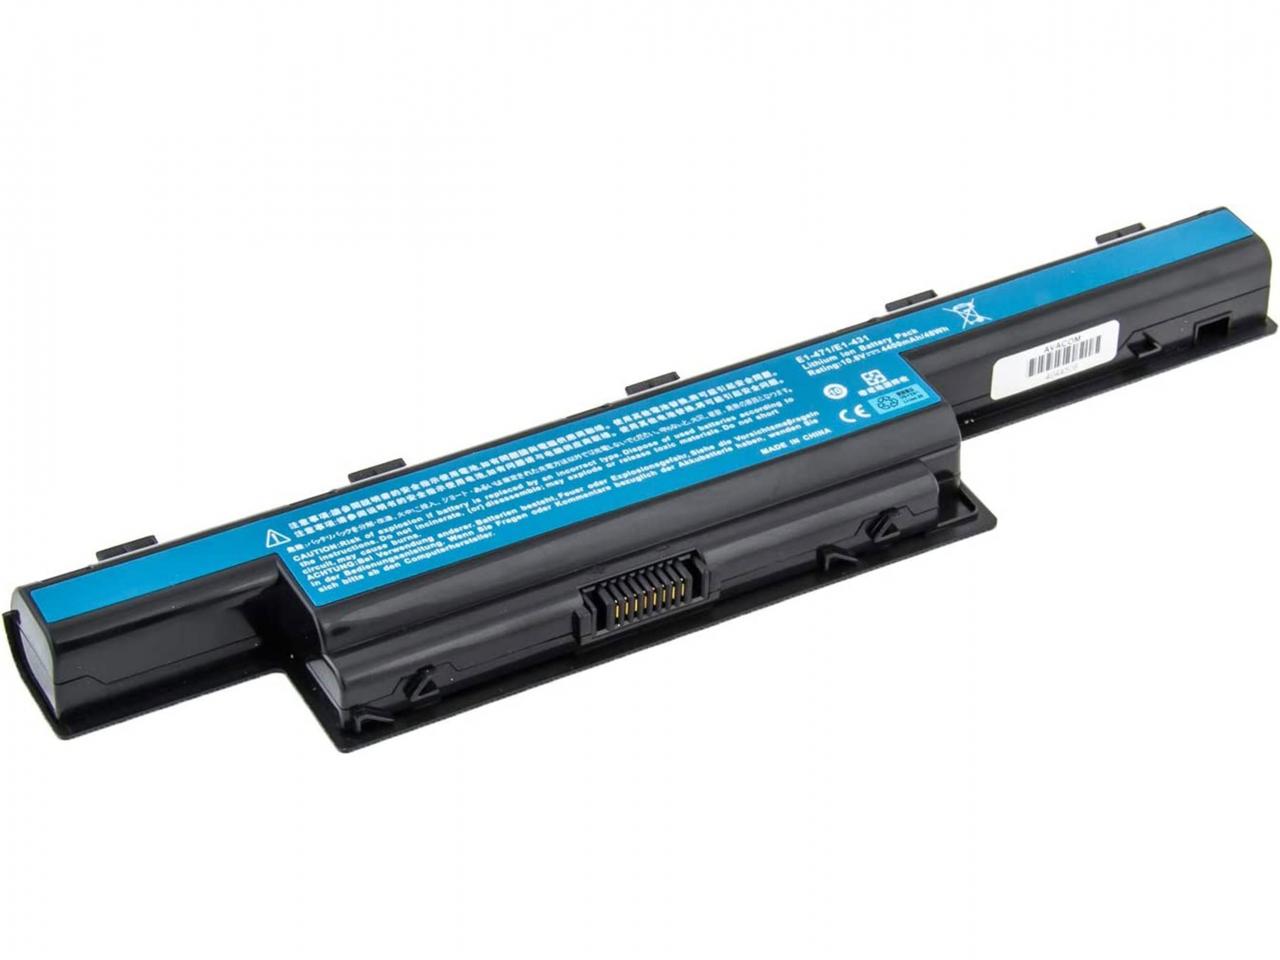 Baterie pro notebooky AVACOM NOAC-7750-N22 4400 mAh - neoriginální